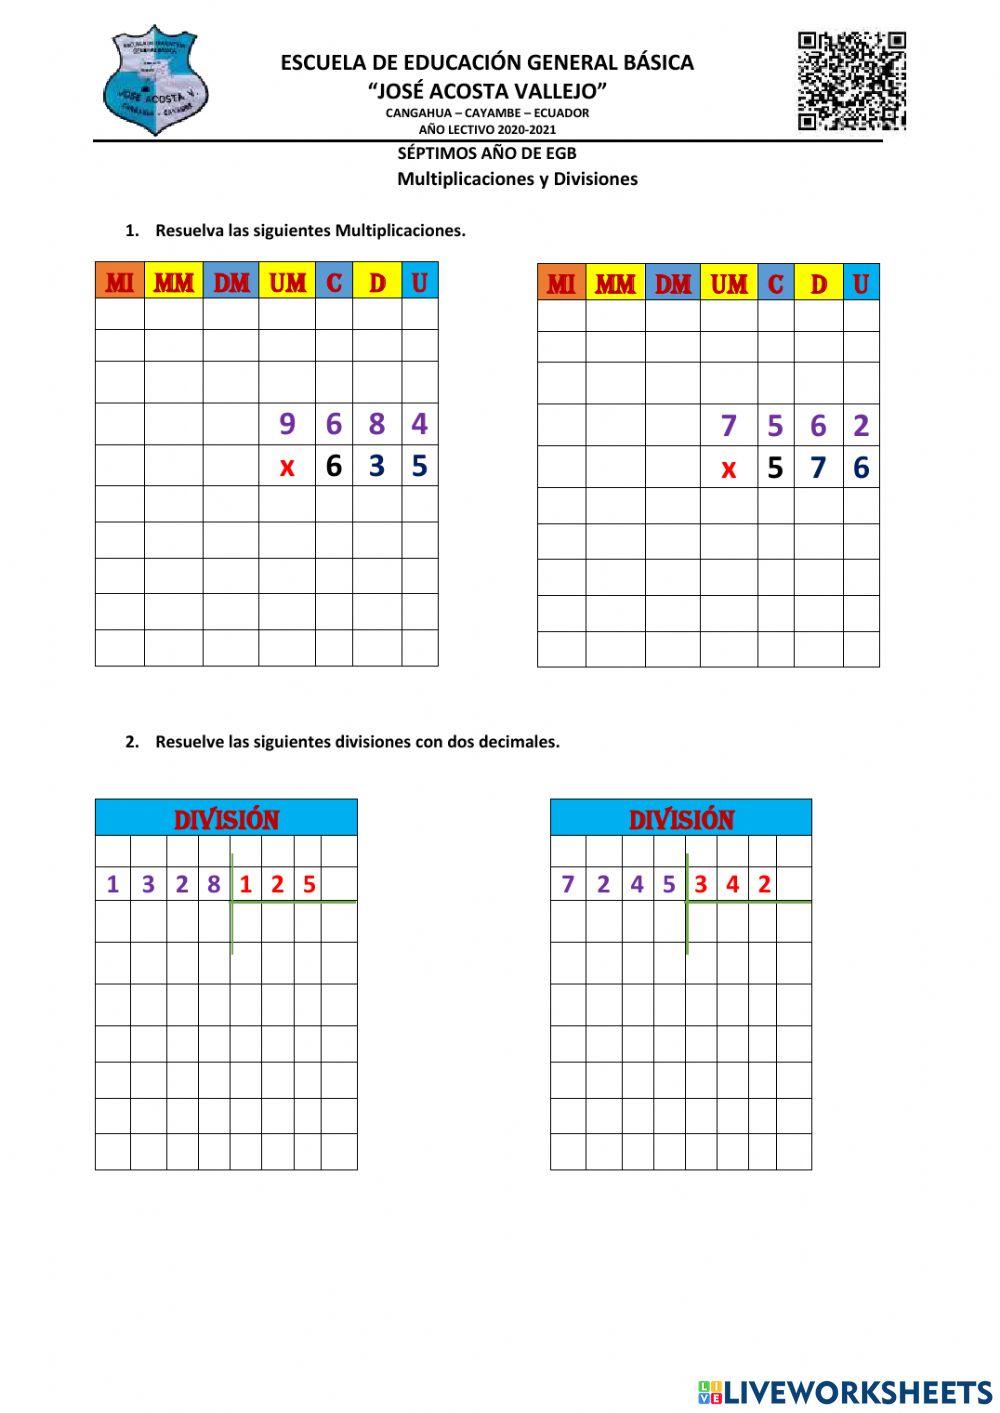 Multiplicacion y division e cifras